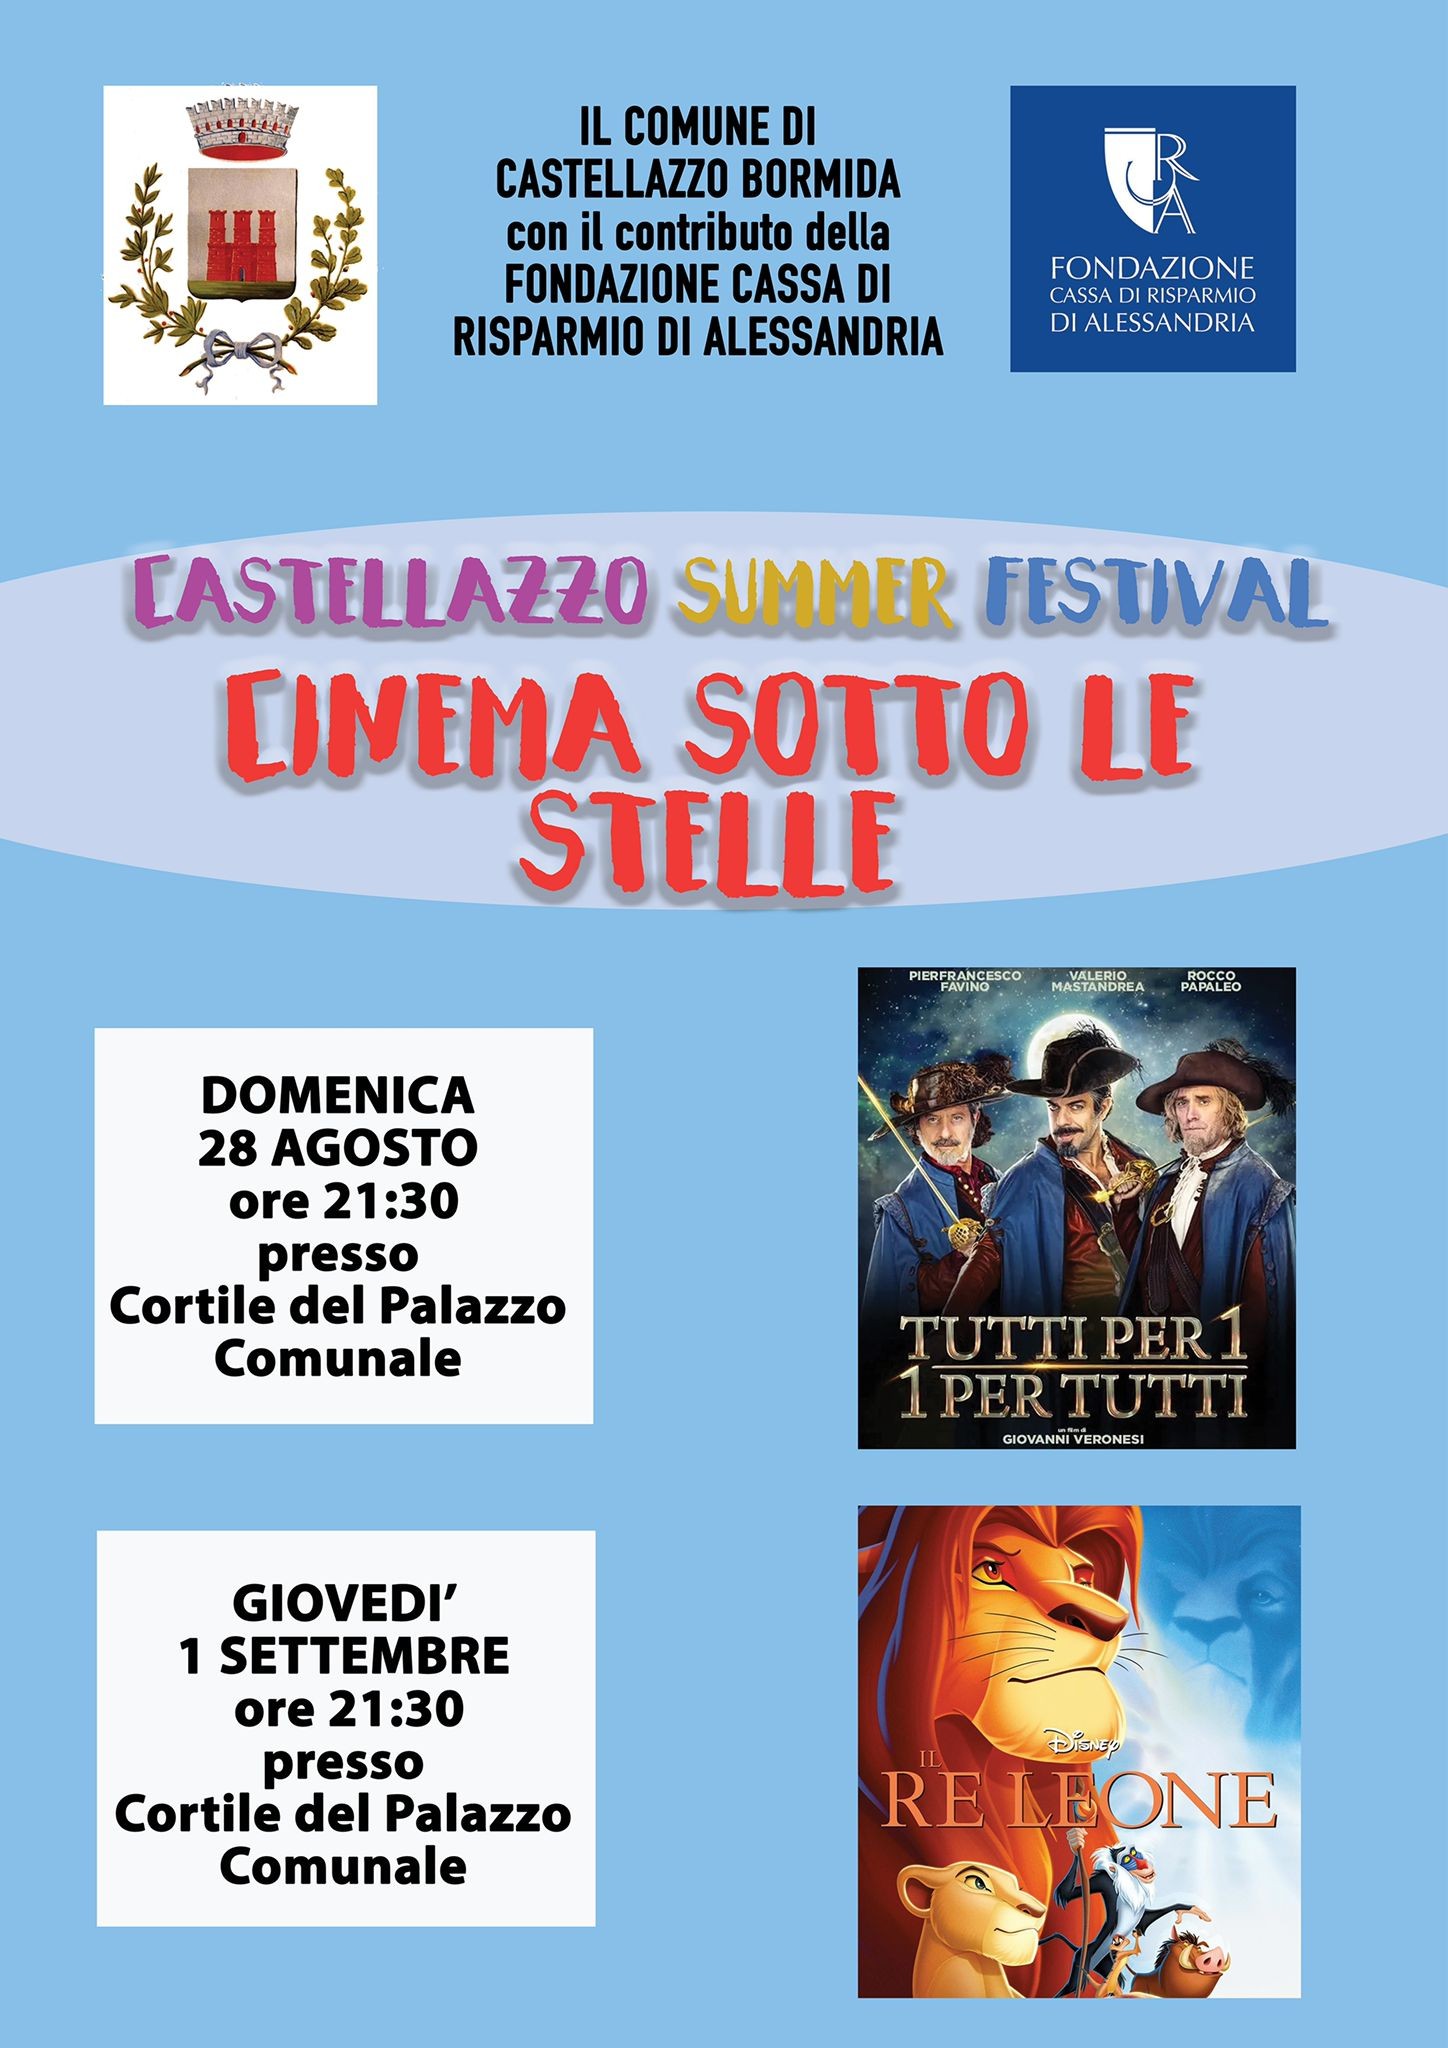 Domenica 28 agosto e giovedì 1°settembre a Castellazzo Bormida il “Cinema sotto le stelle”